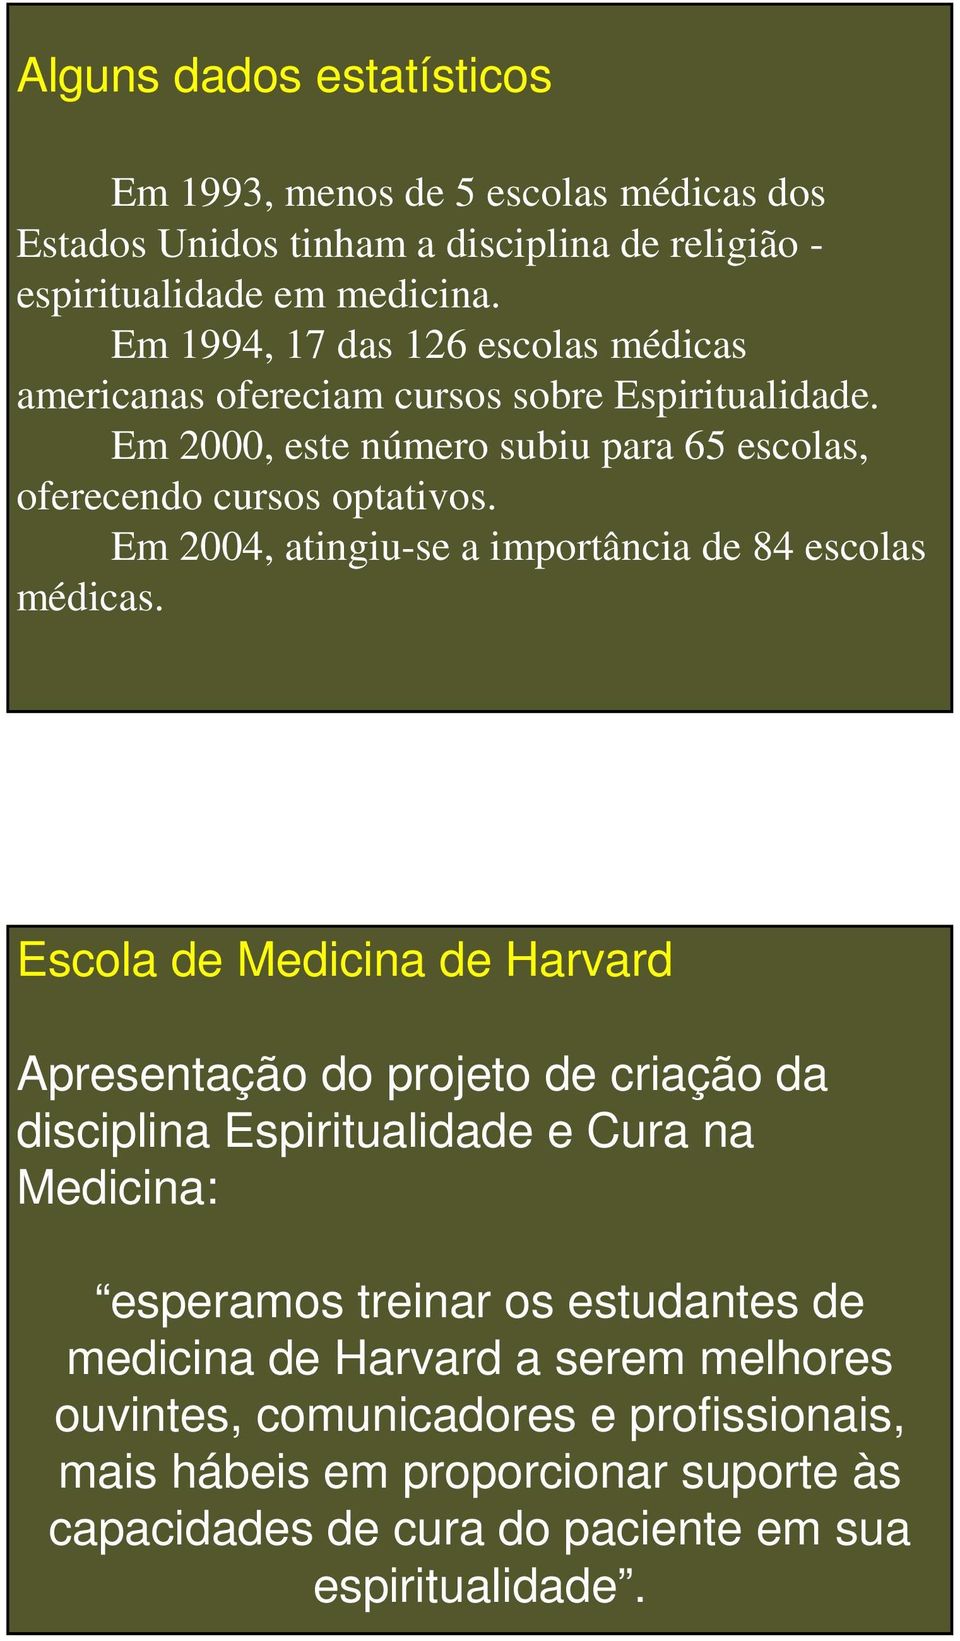 Em 2004, atingiu-se a importância de 84 escolas médicas.